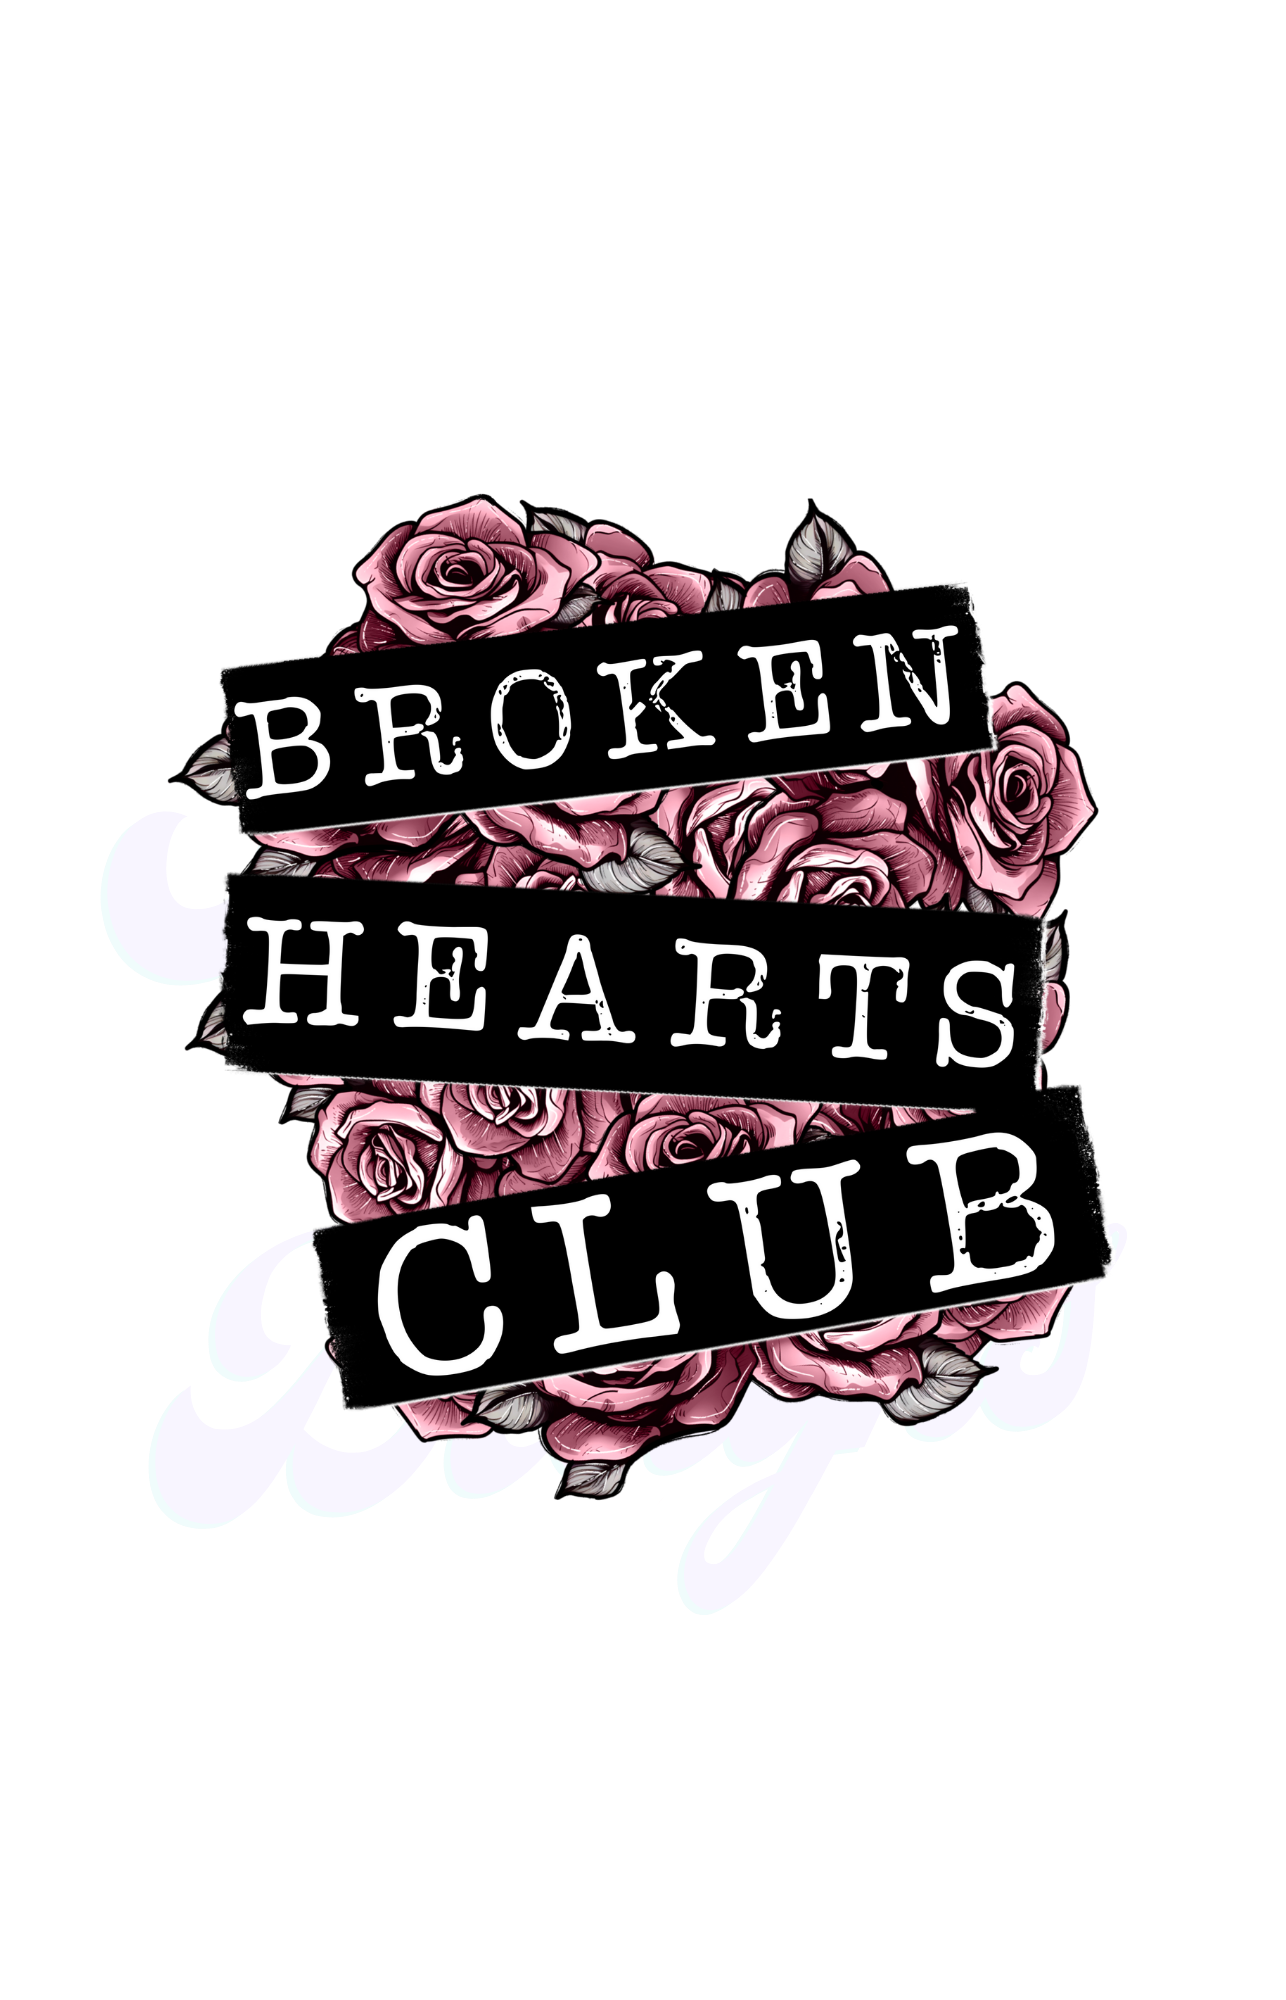 Broken Hearts Club Scorpio 65 Designs